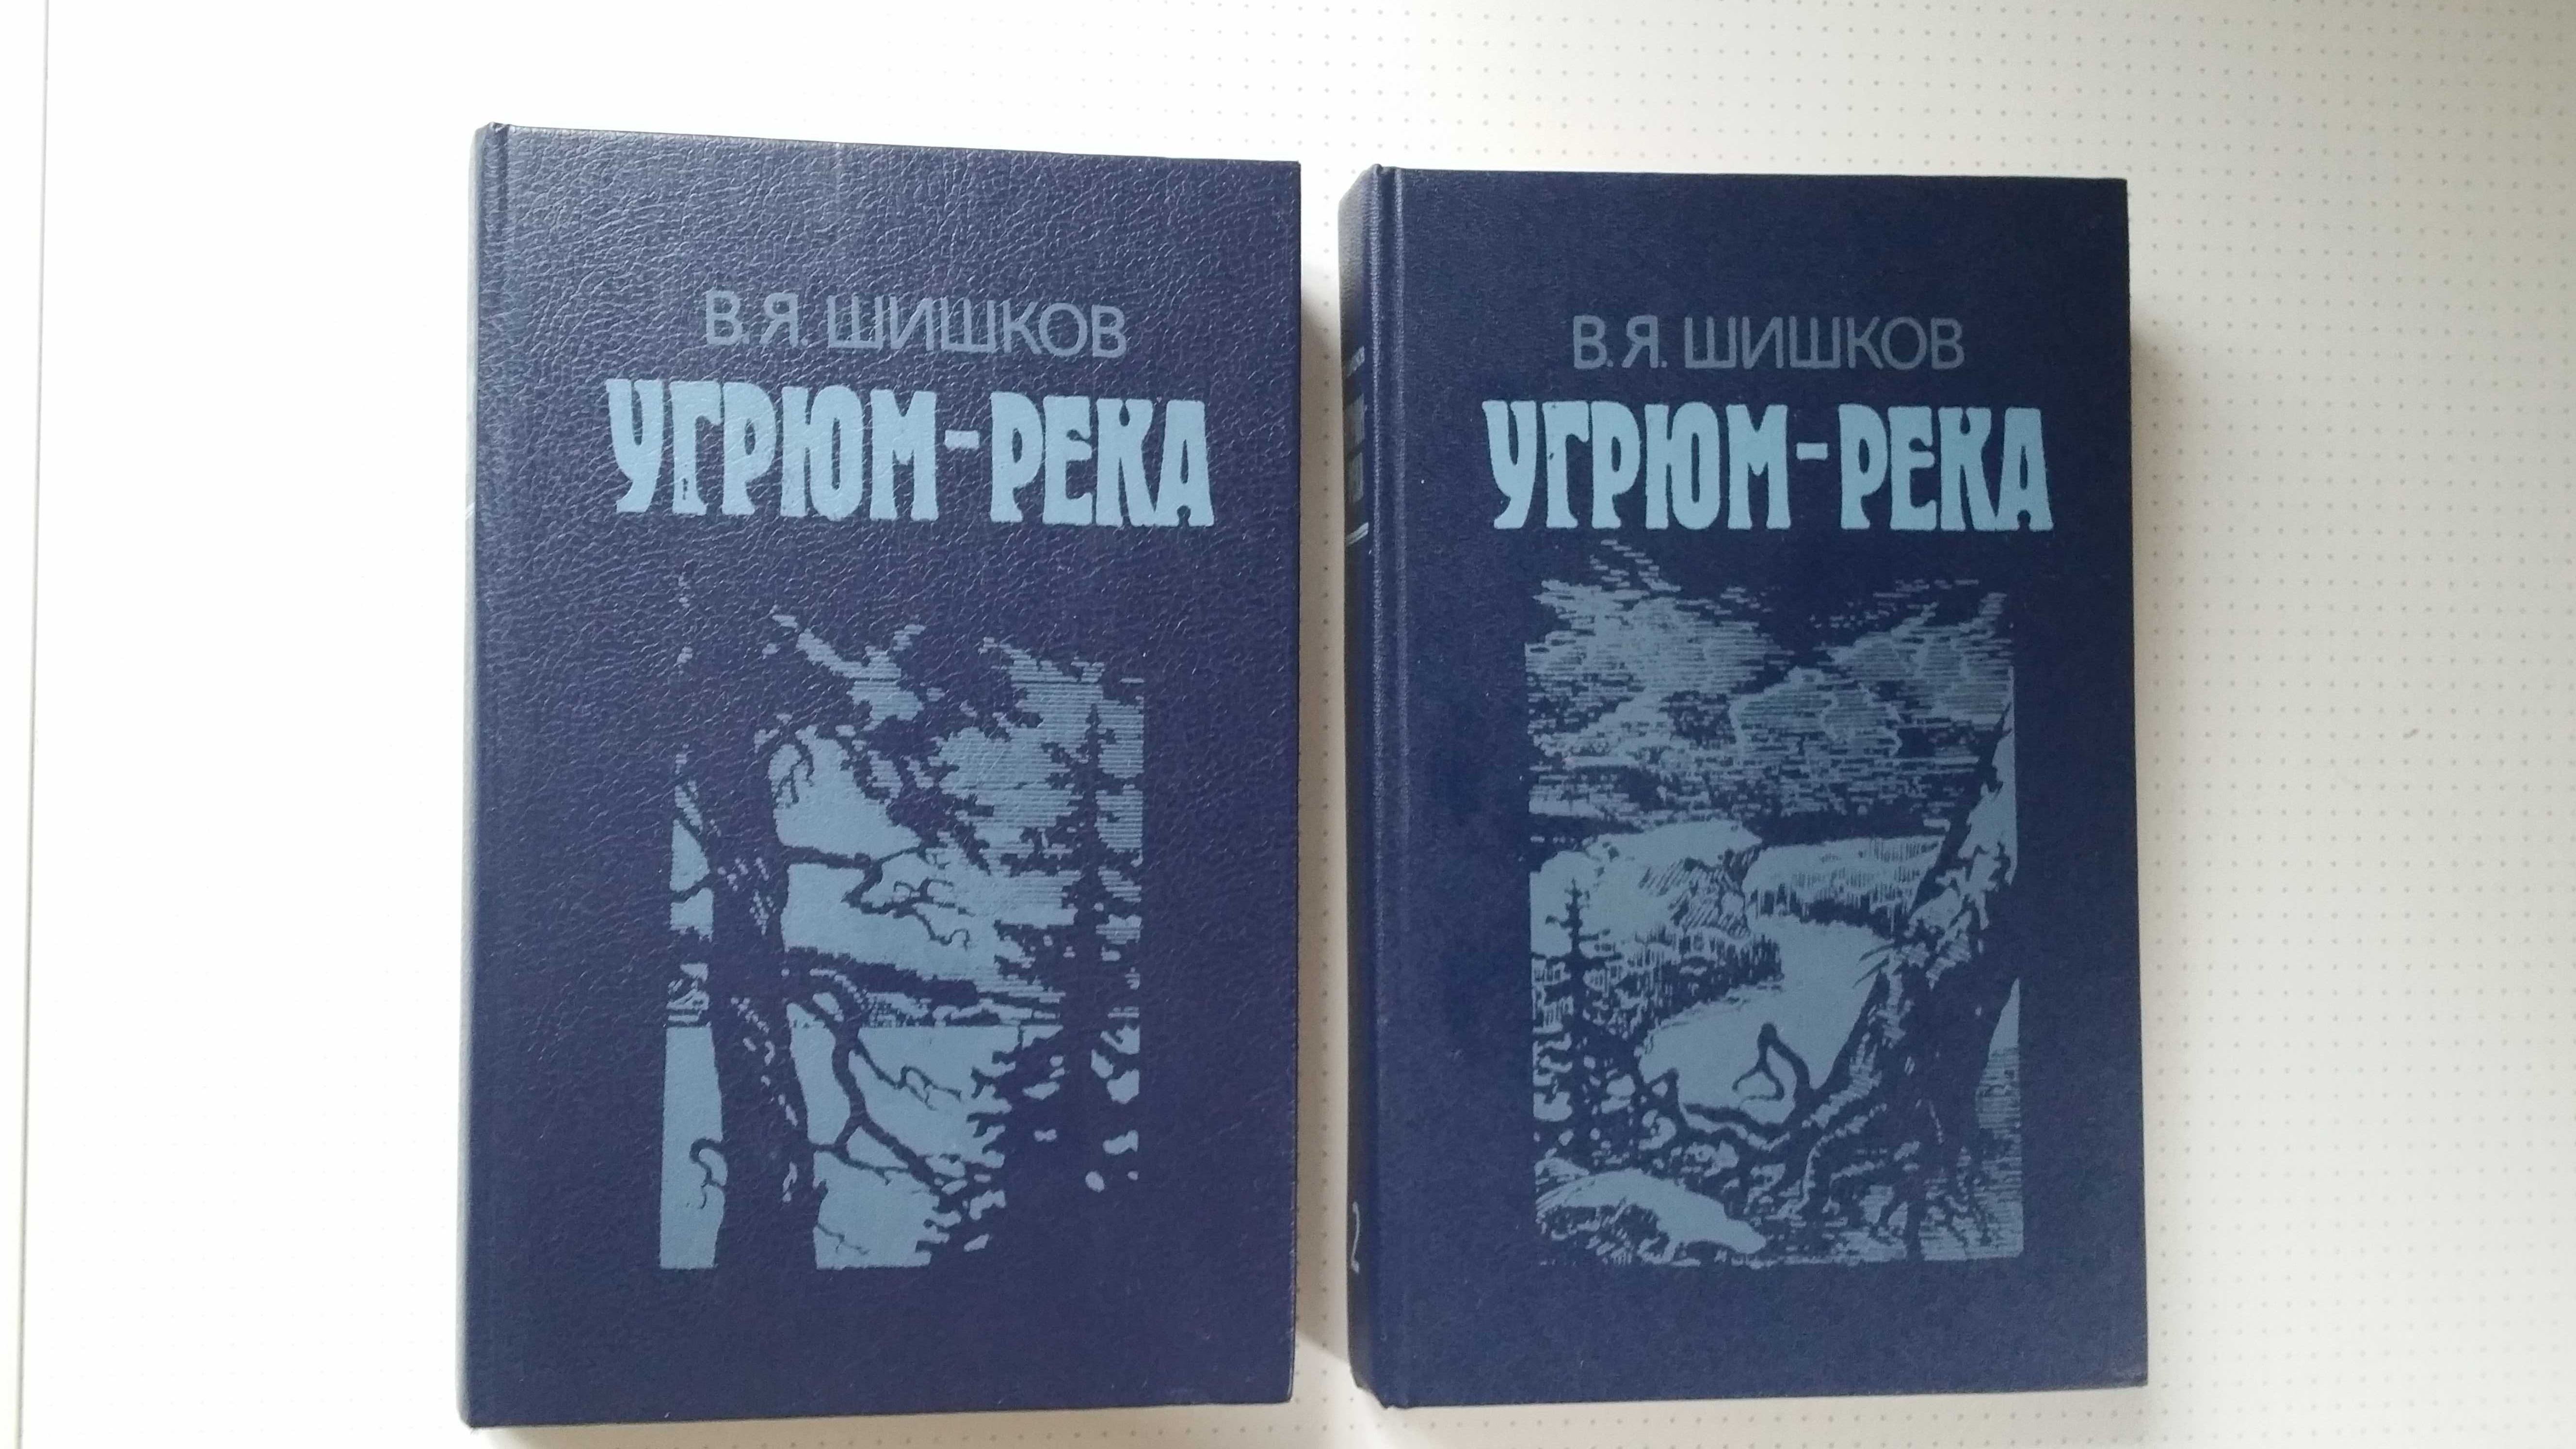 В.Я. Шишков "Угрюм-Река" 2 тома